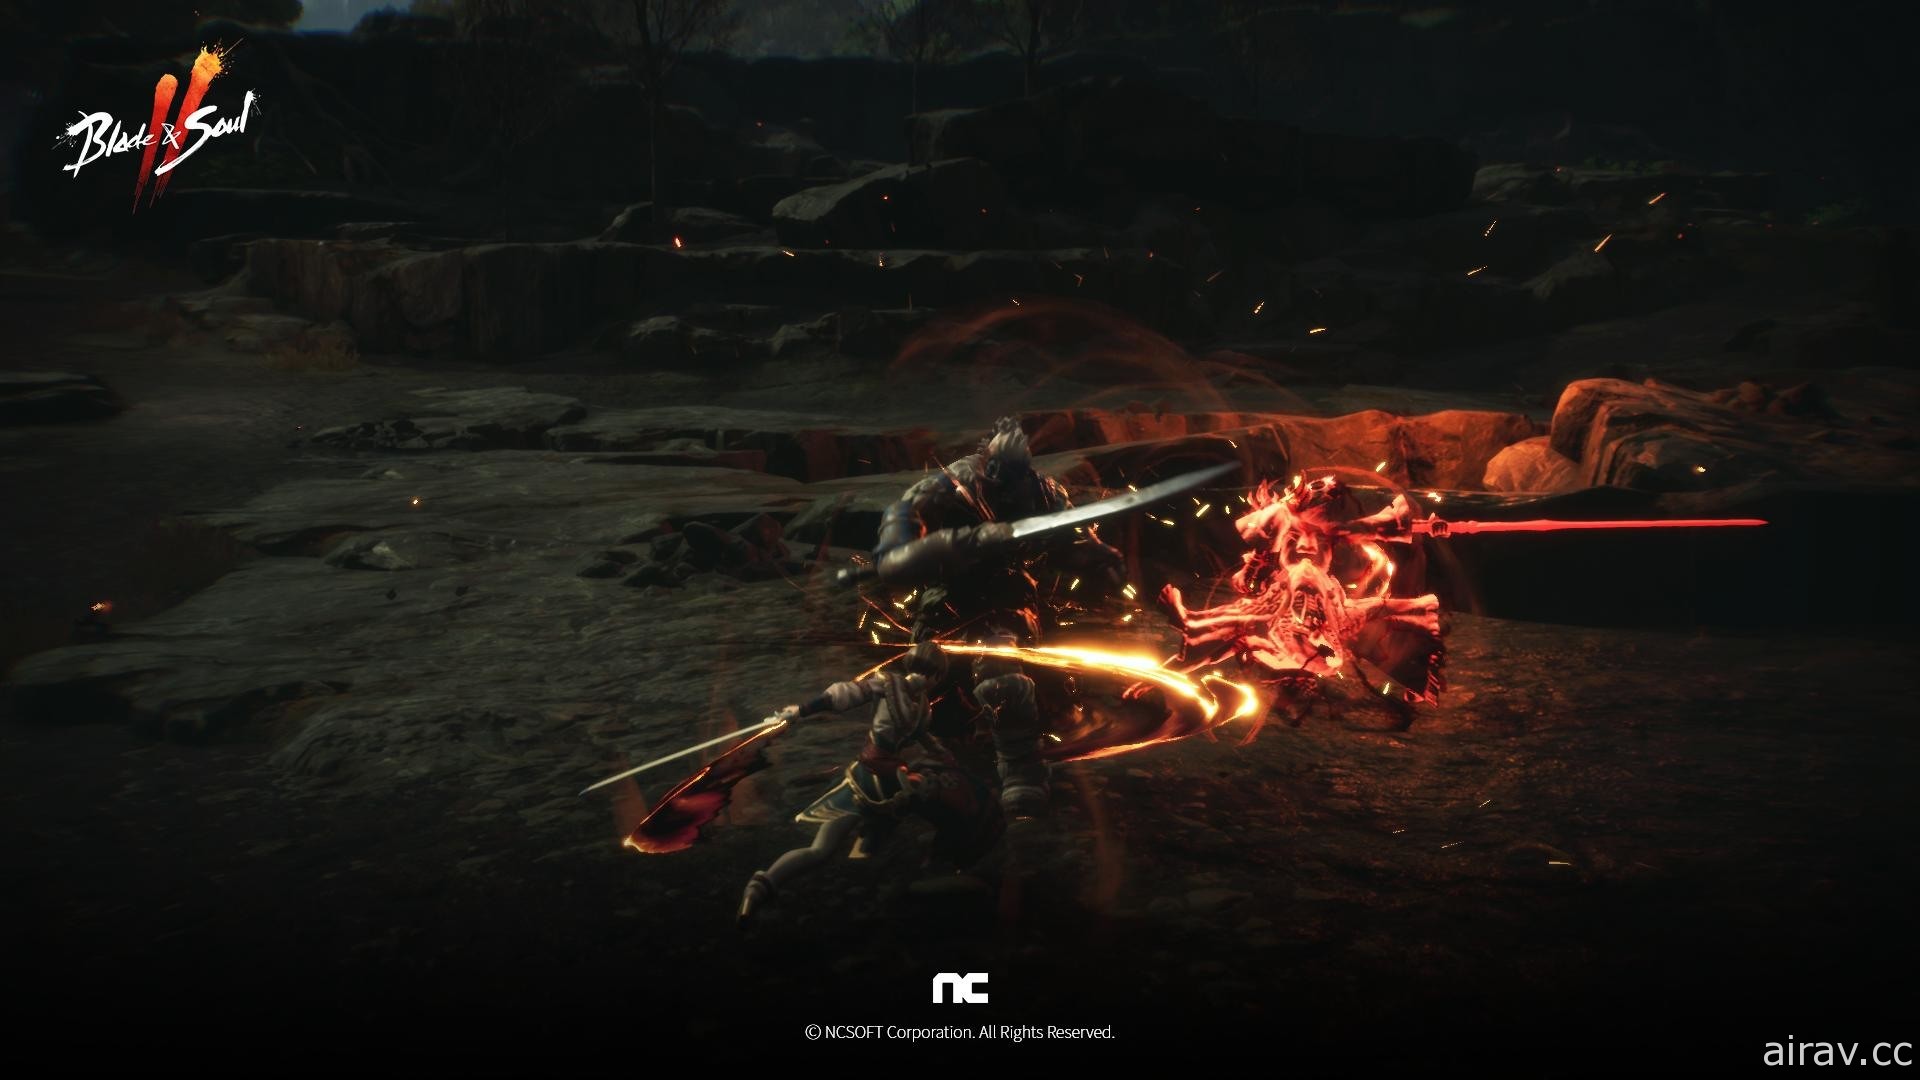 《劍靈 2》公開最新宣傳影片 揭露劍、斧、拳甲等戰鬥畫面及新職業